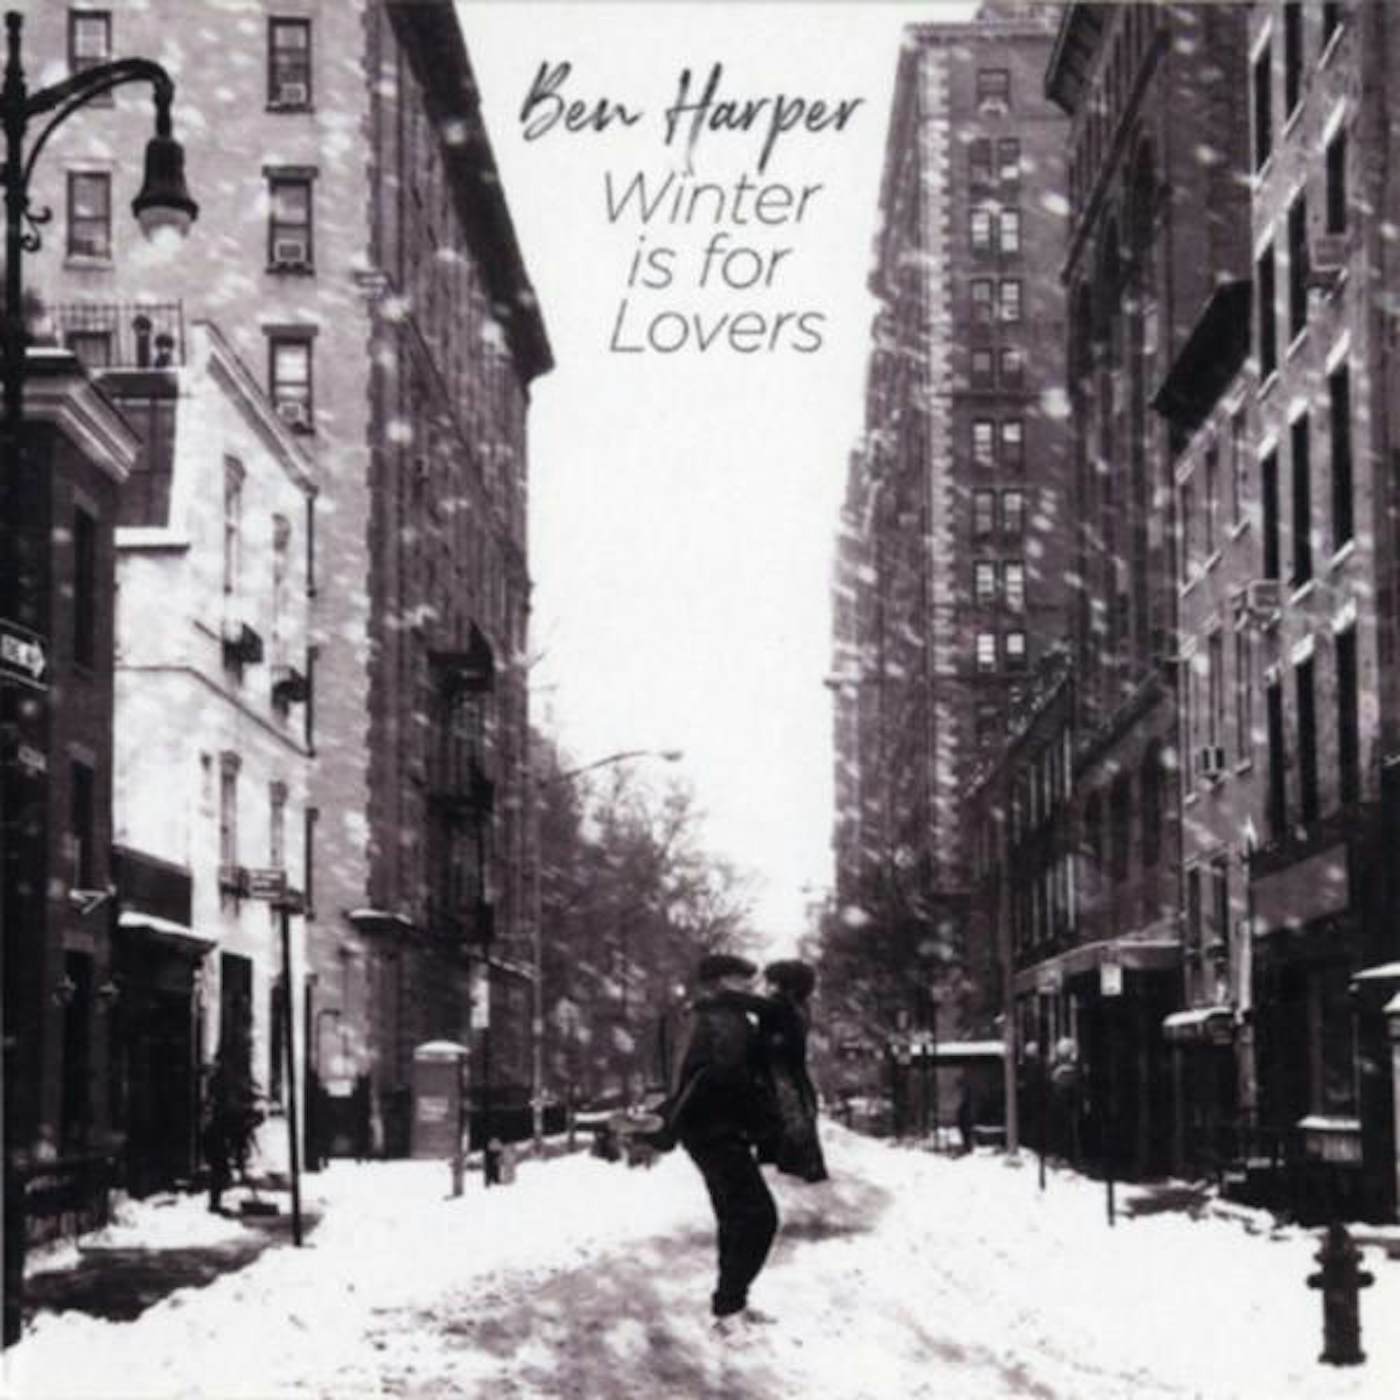 Ben Harper WINTER IS FOR LOVERS CD